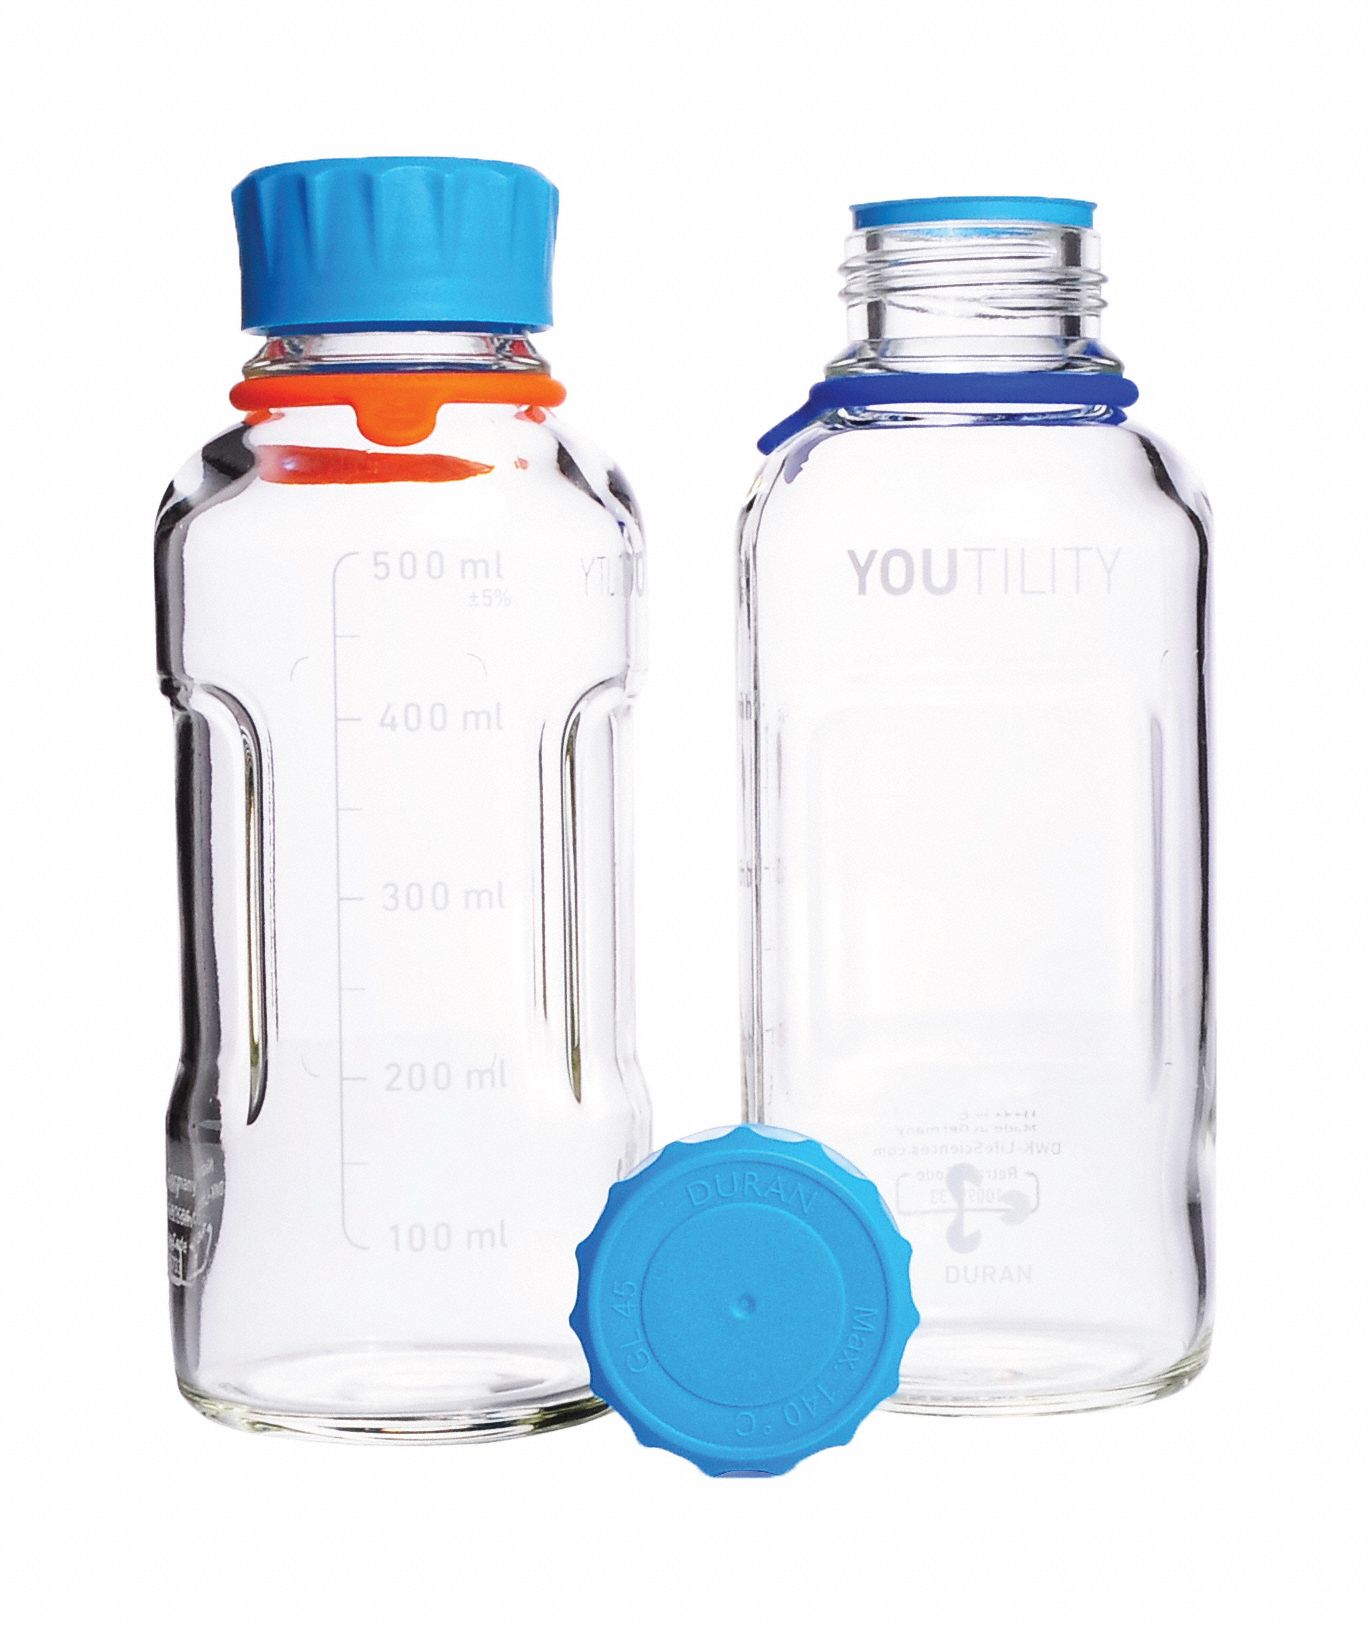 Bottle: 17 oz Labware Capacity - English, Type I Borosilicate Glass, Includes Closure, 4 PK